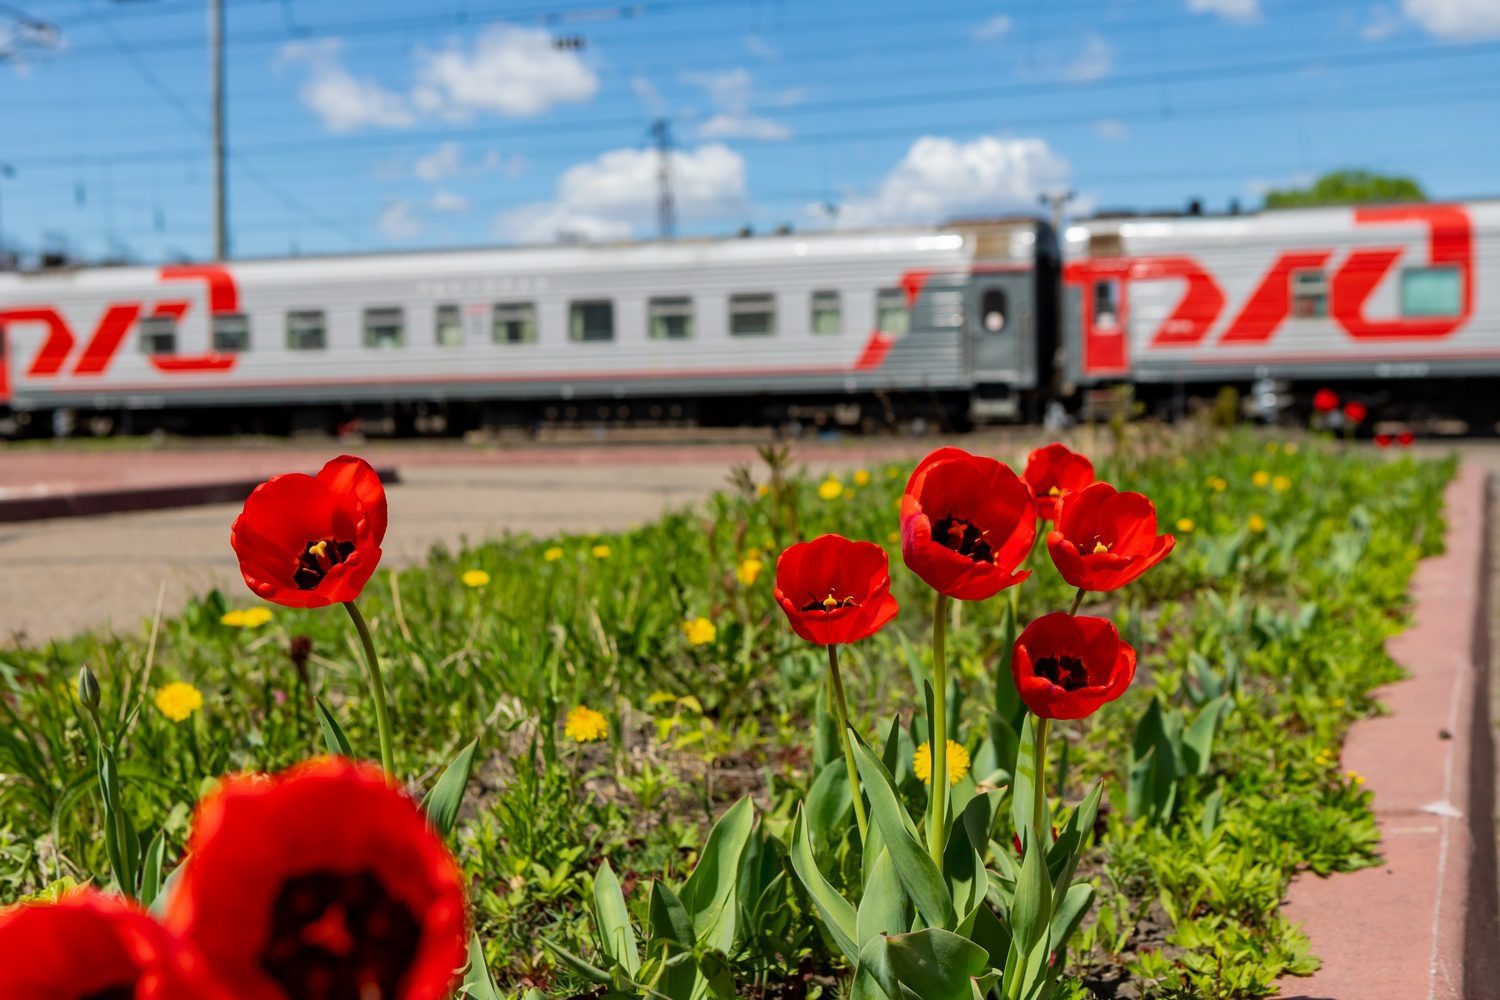 Ржд красноярск телефон. Железная дорога цветы. Поезд цветы. Экспресс дальнего следования. Цветок на железнодорожных путях.